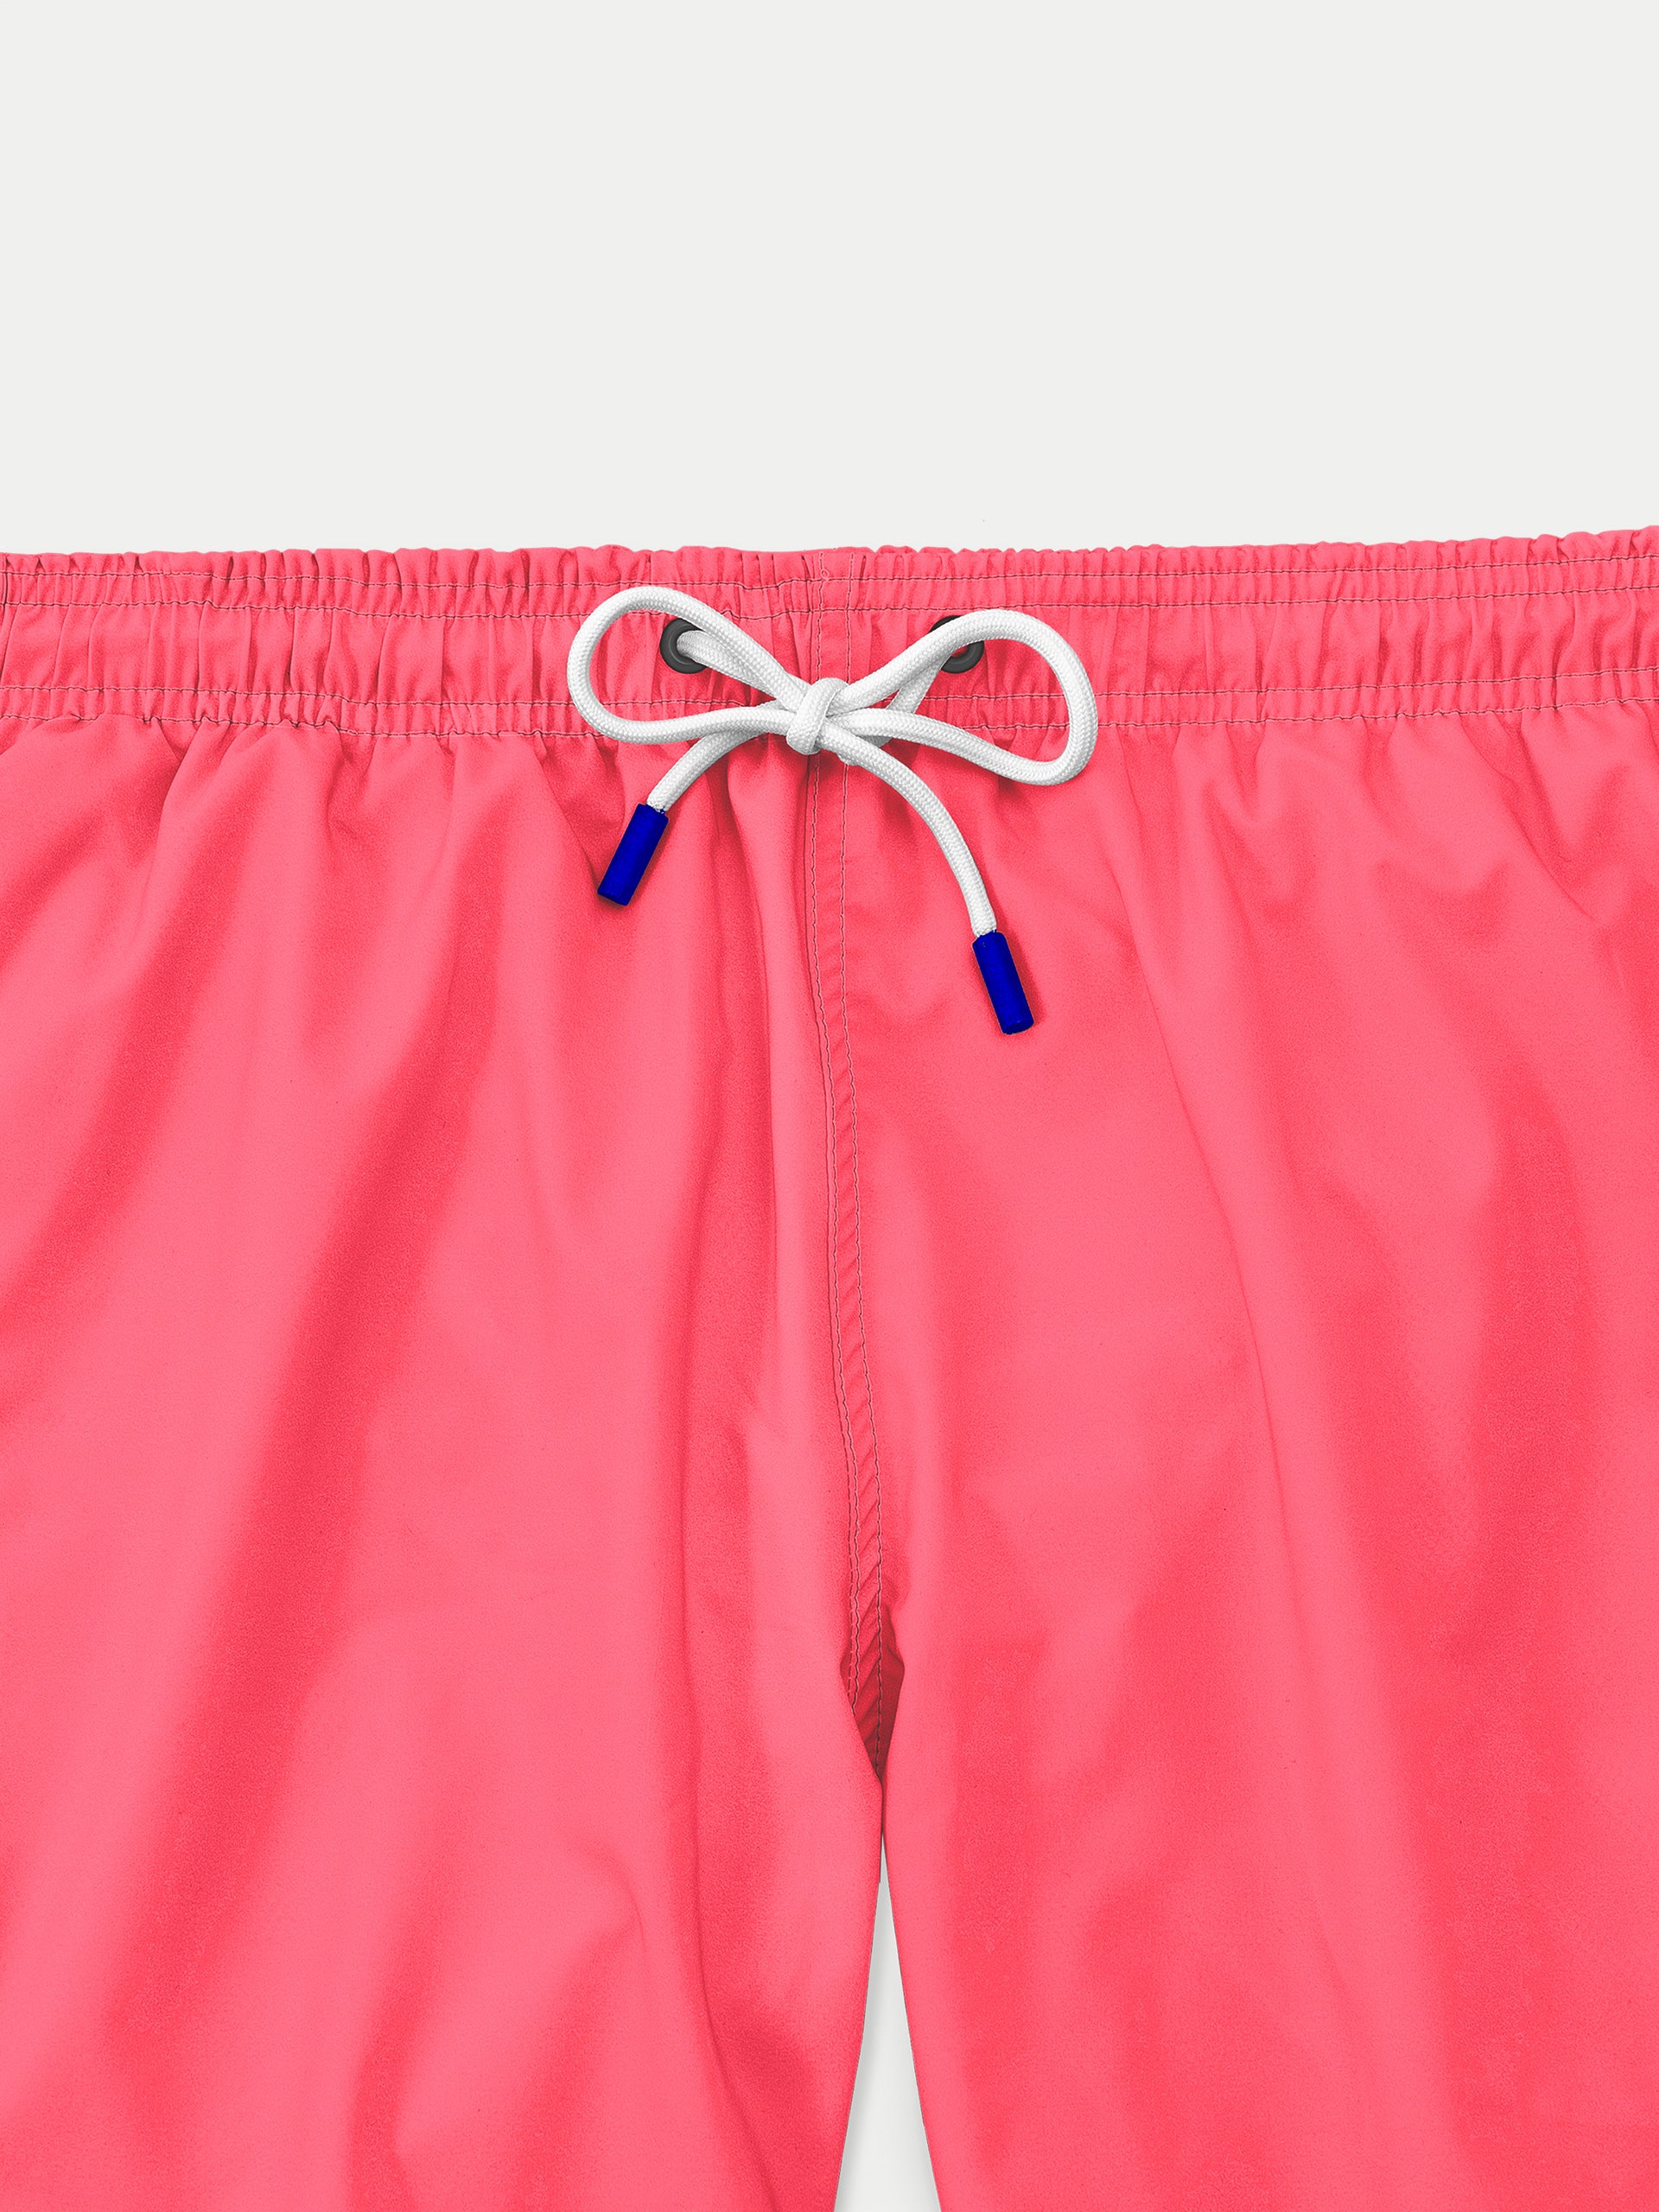 ‘Neon Pink’ Swim Trunks for Men by 98 Coast Av.